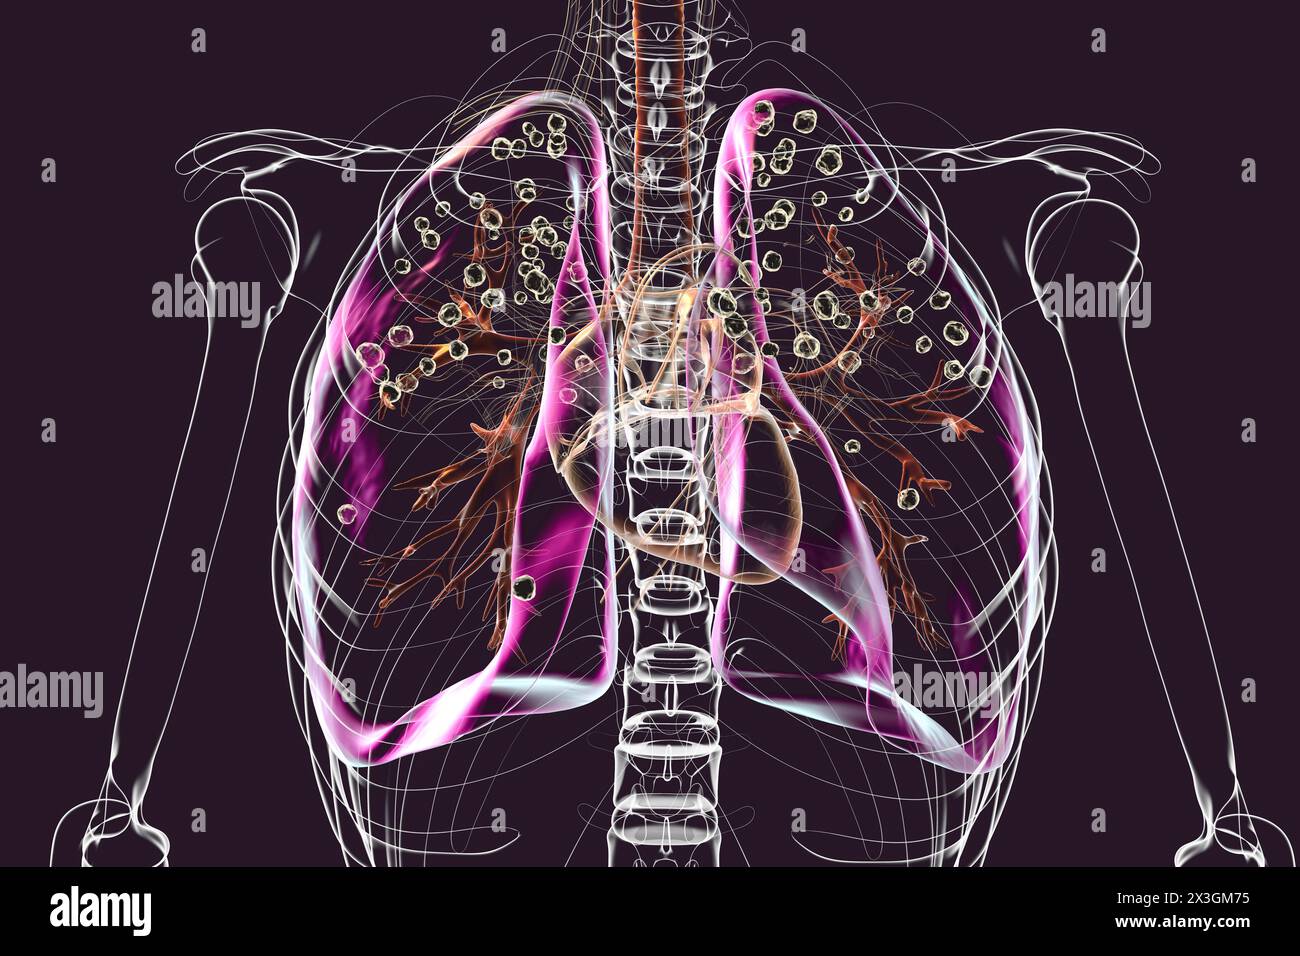 Abbildung der Lungen, die von Silikose in einem transparenten menschlichen Körper betroffen sind, wobei die Atemwegsprobleme aufgrund der Kieselsäure-Exposition hervorgehoben werden und dunkle silikotische Knoten sichtbar werden. Stockfoto